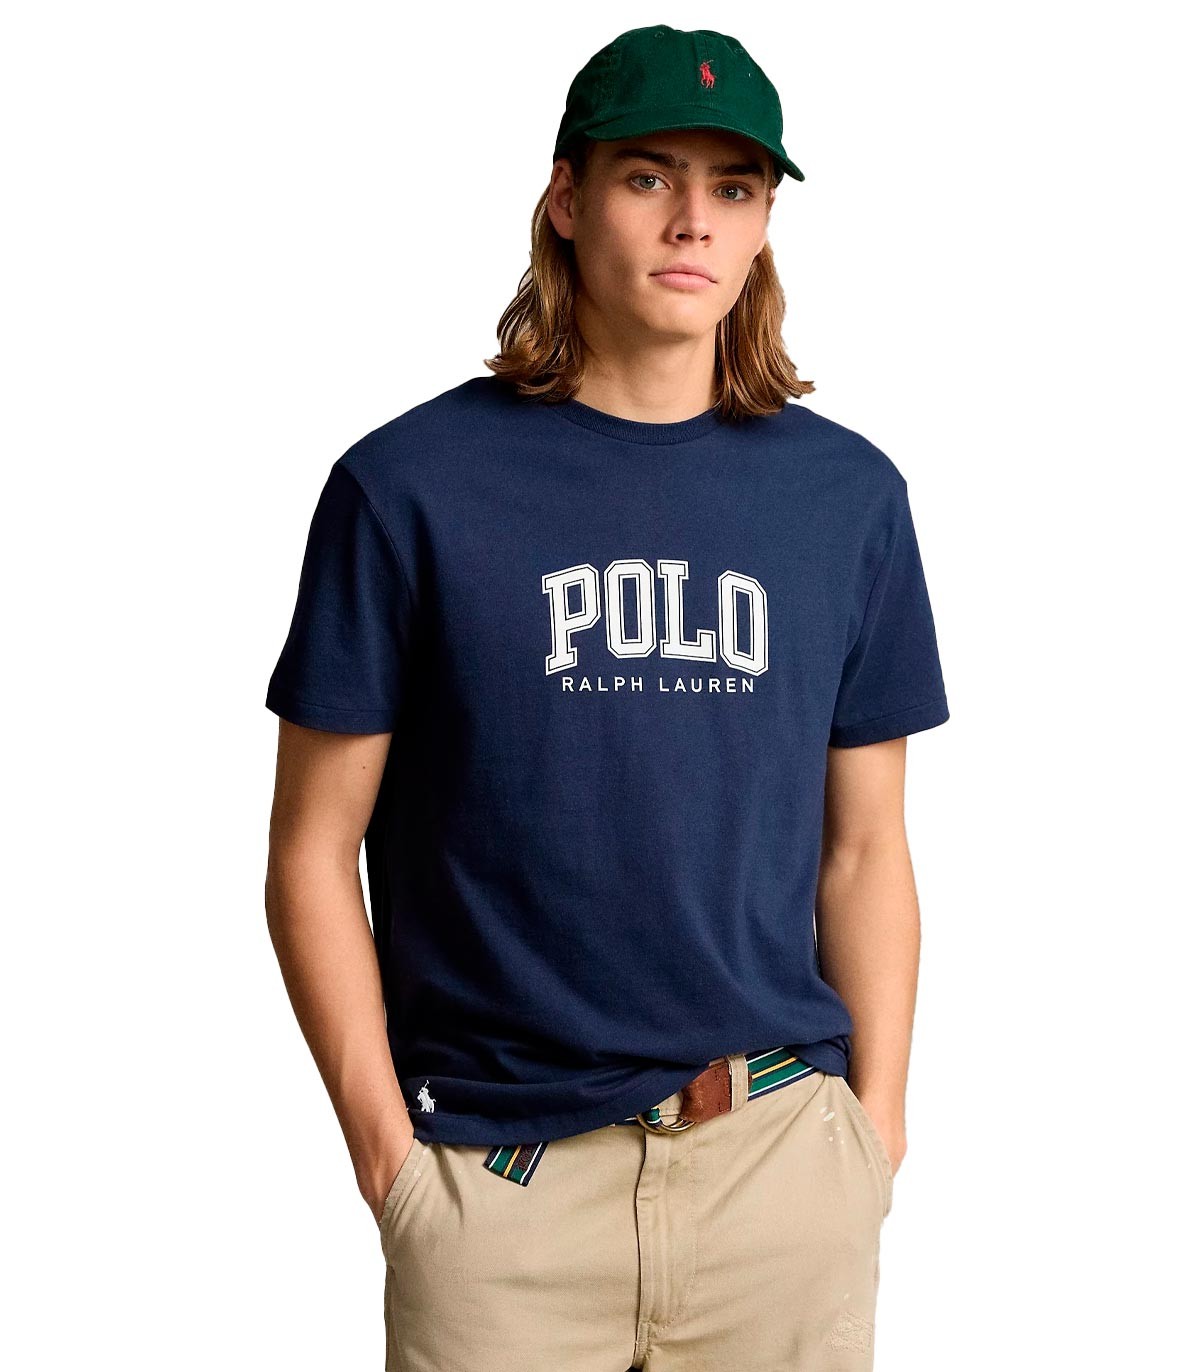 Polo Ralph Lauren - Camiseta Con Estampado - Marino